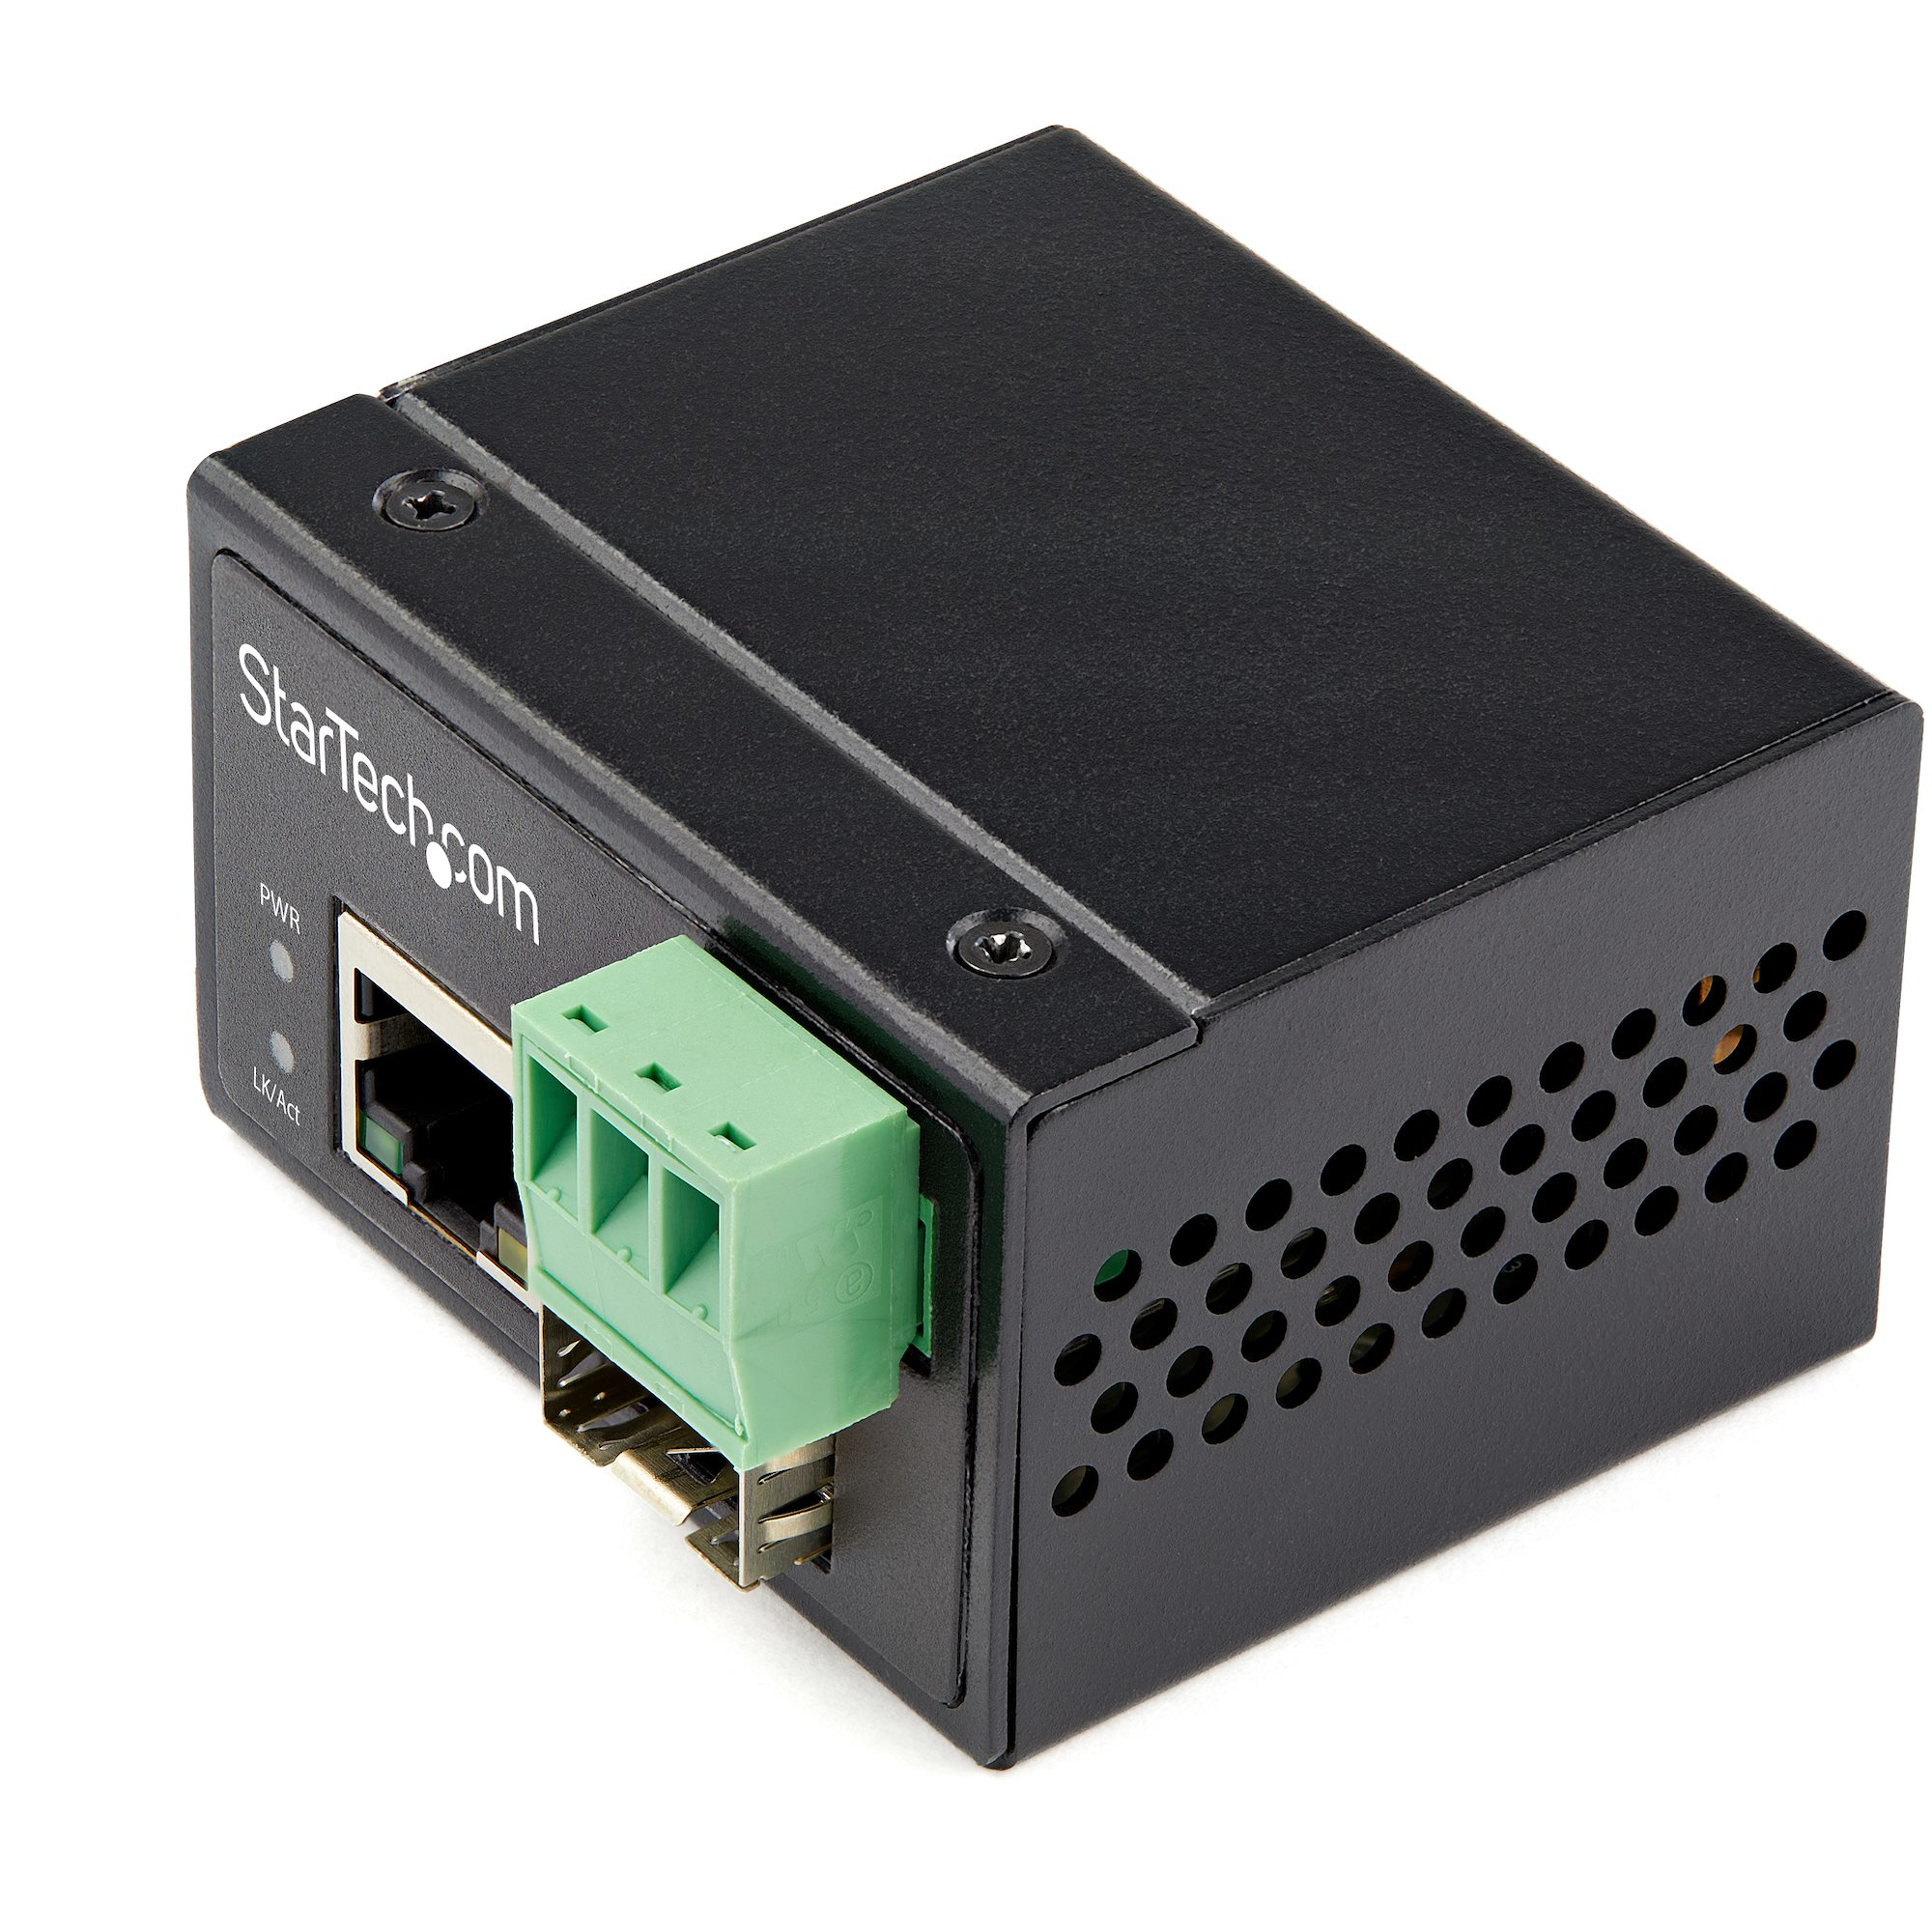 StarTech.com Industriell fiber till Ethernet-mediakonverterare - 100 Mbit/s SFP till RJ45/Cat6 - Singlemode/Multimode optisk fiber till kopparnätverk - 12-56 V DC - IP30/-40 &degC till +75 &degC